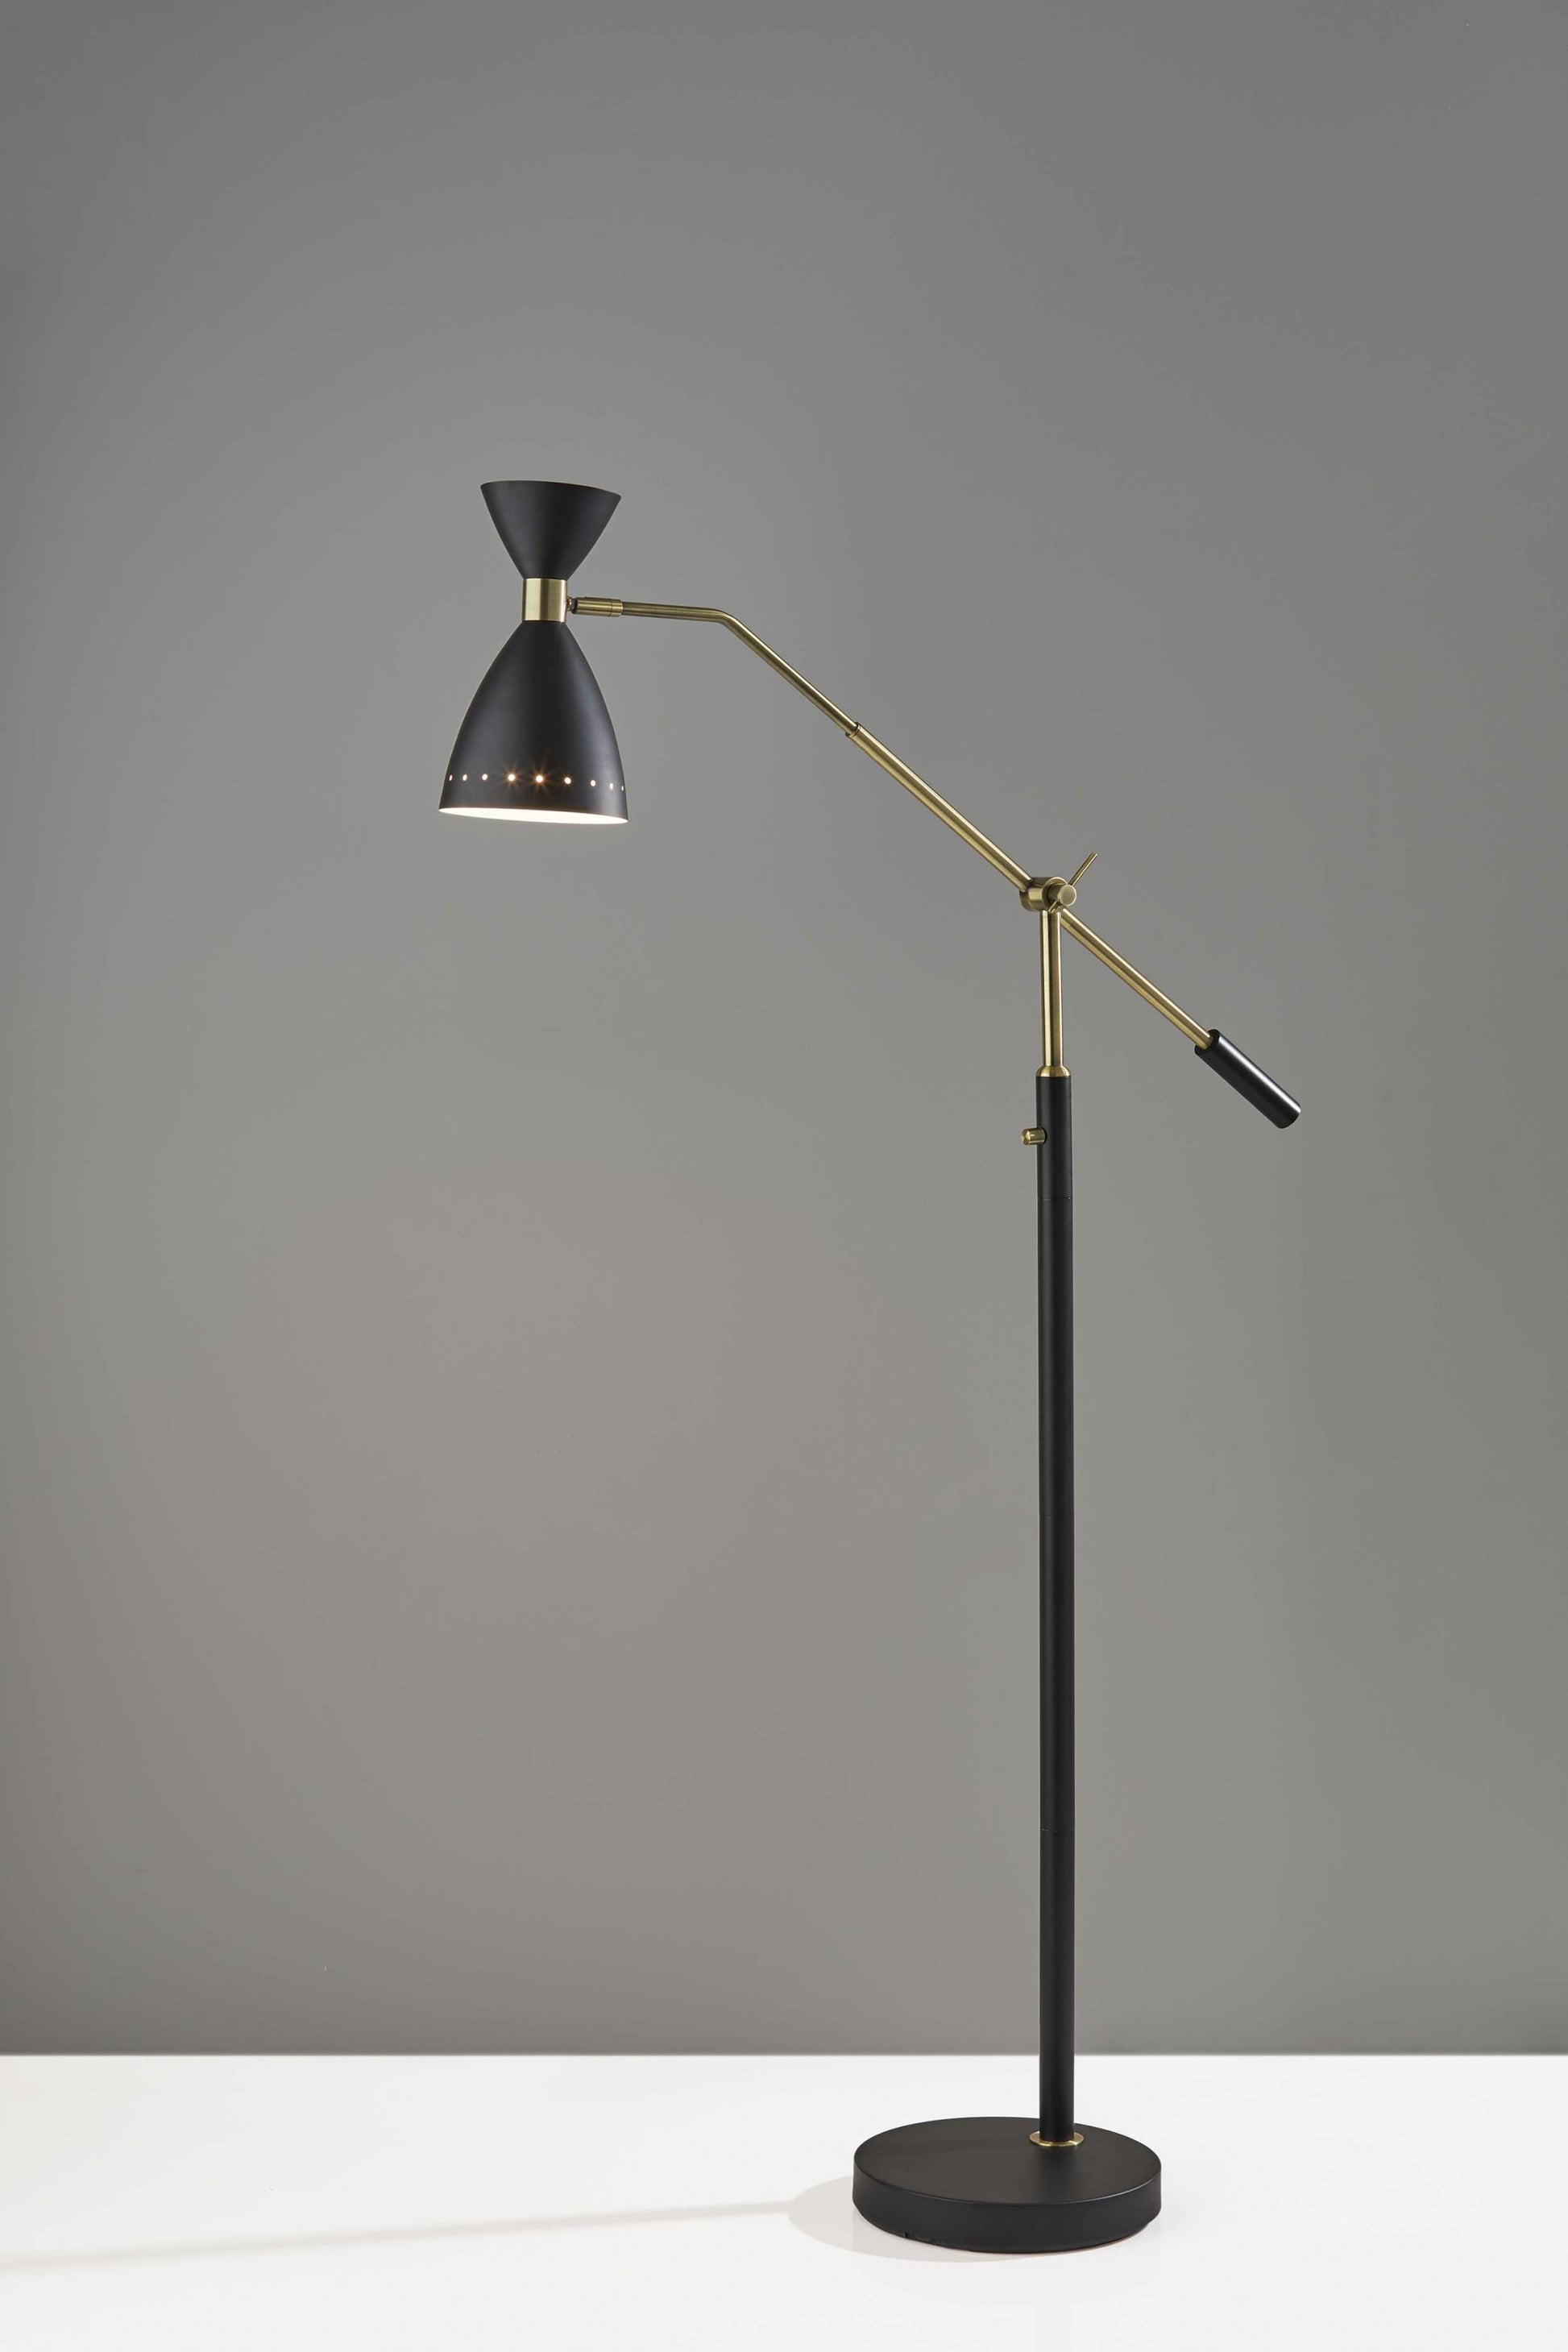 Brass Cinch Black Metal Adjustable Floor Lamp By Homeroots | Floor Lamps | Modishstore - 2